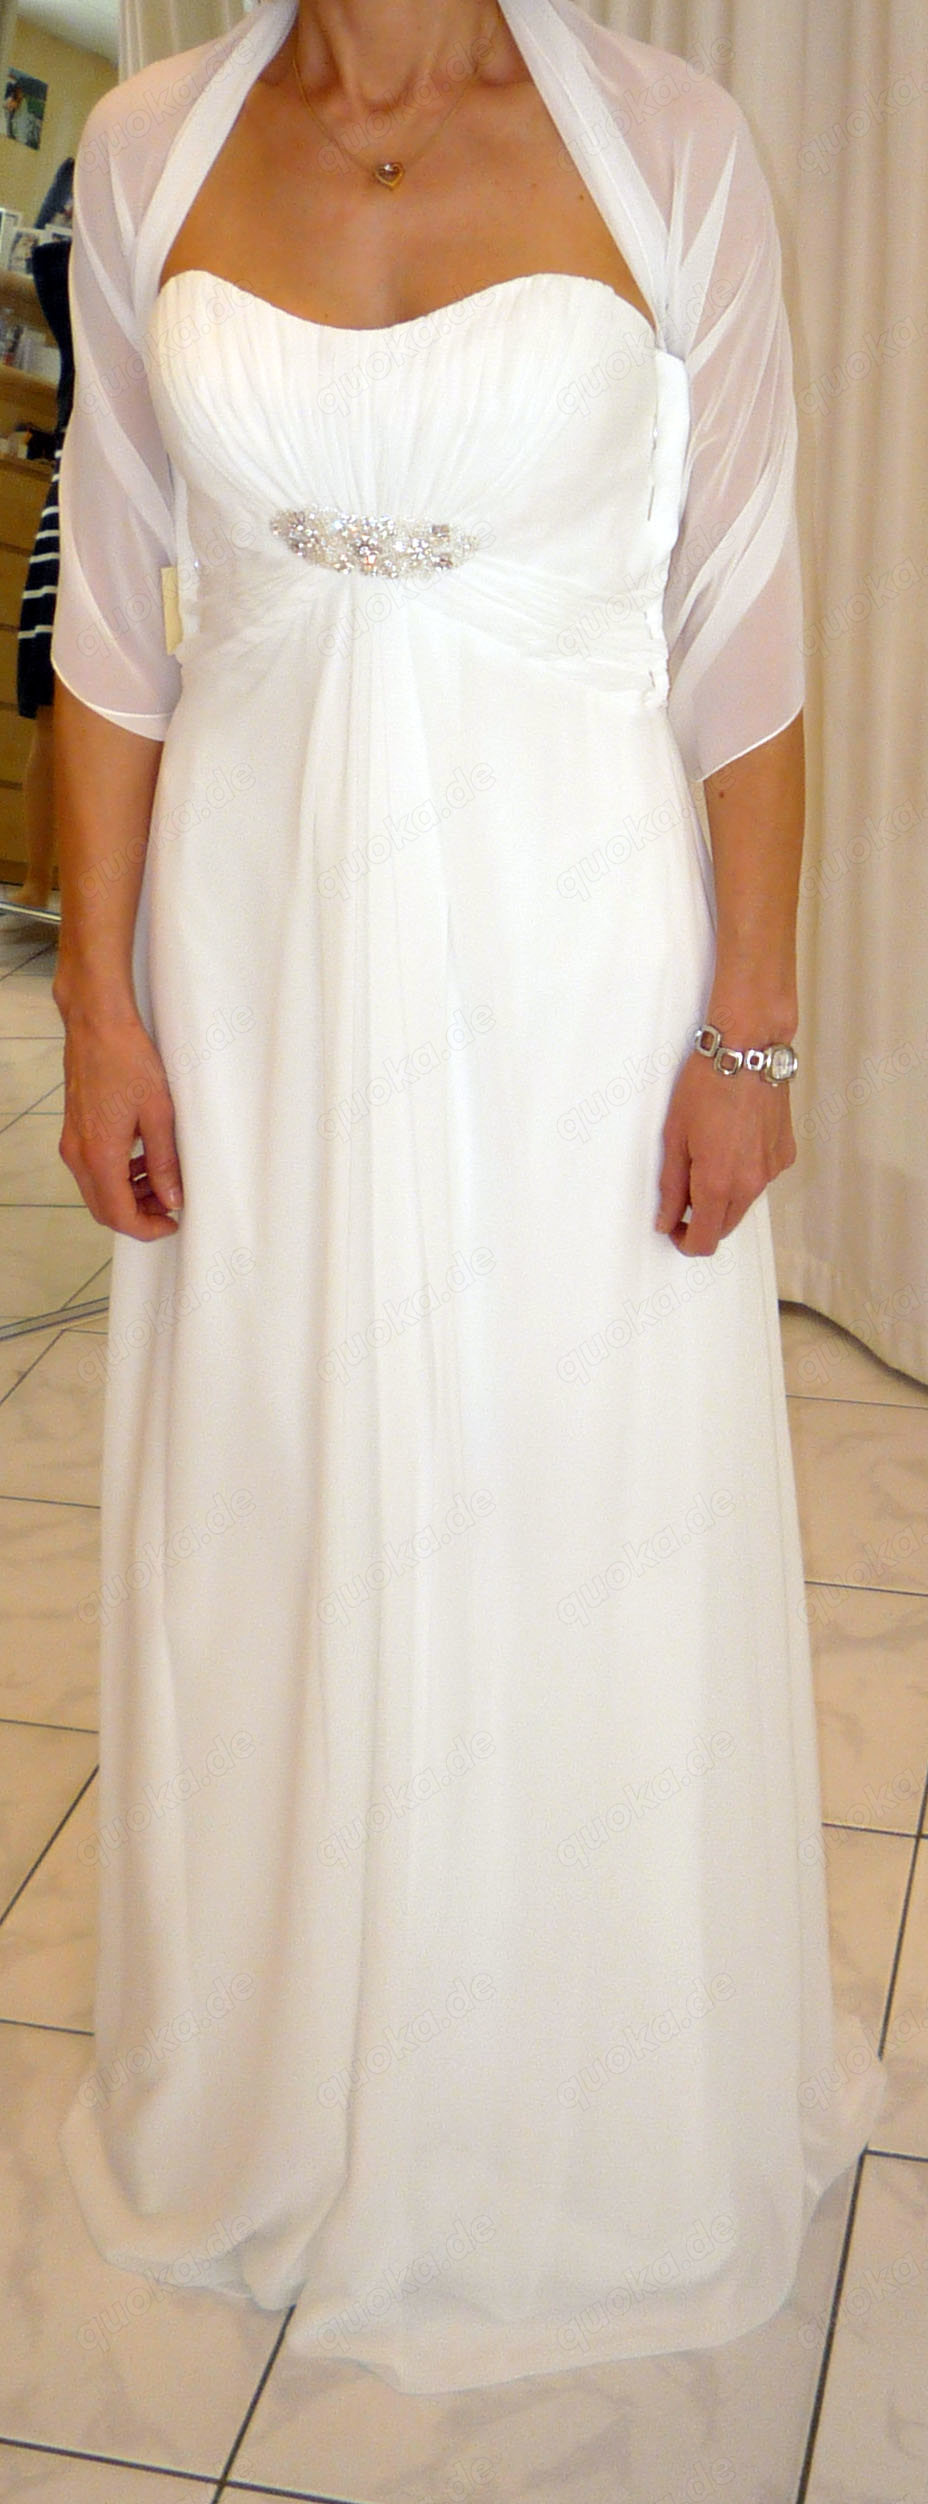 Brautkleid mit Unterrock und kleinen Umhang Schleier Größe 34